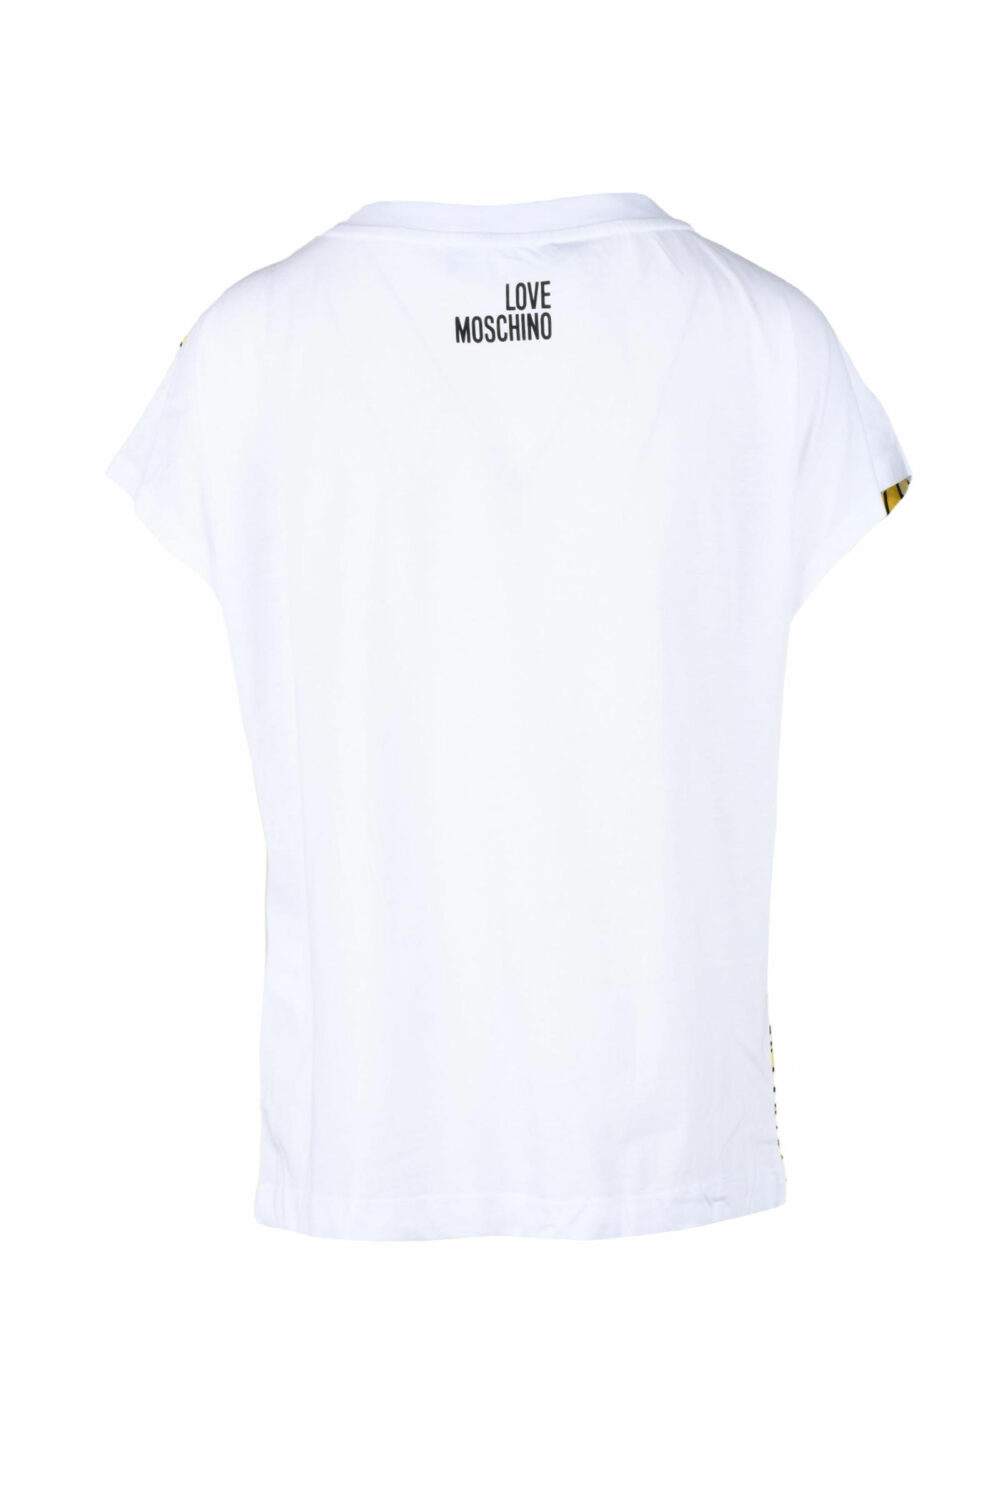 T-shirt Love Moschino BIANCO/GIALLO - Foto 2